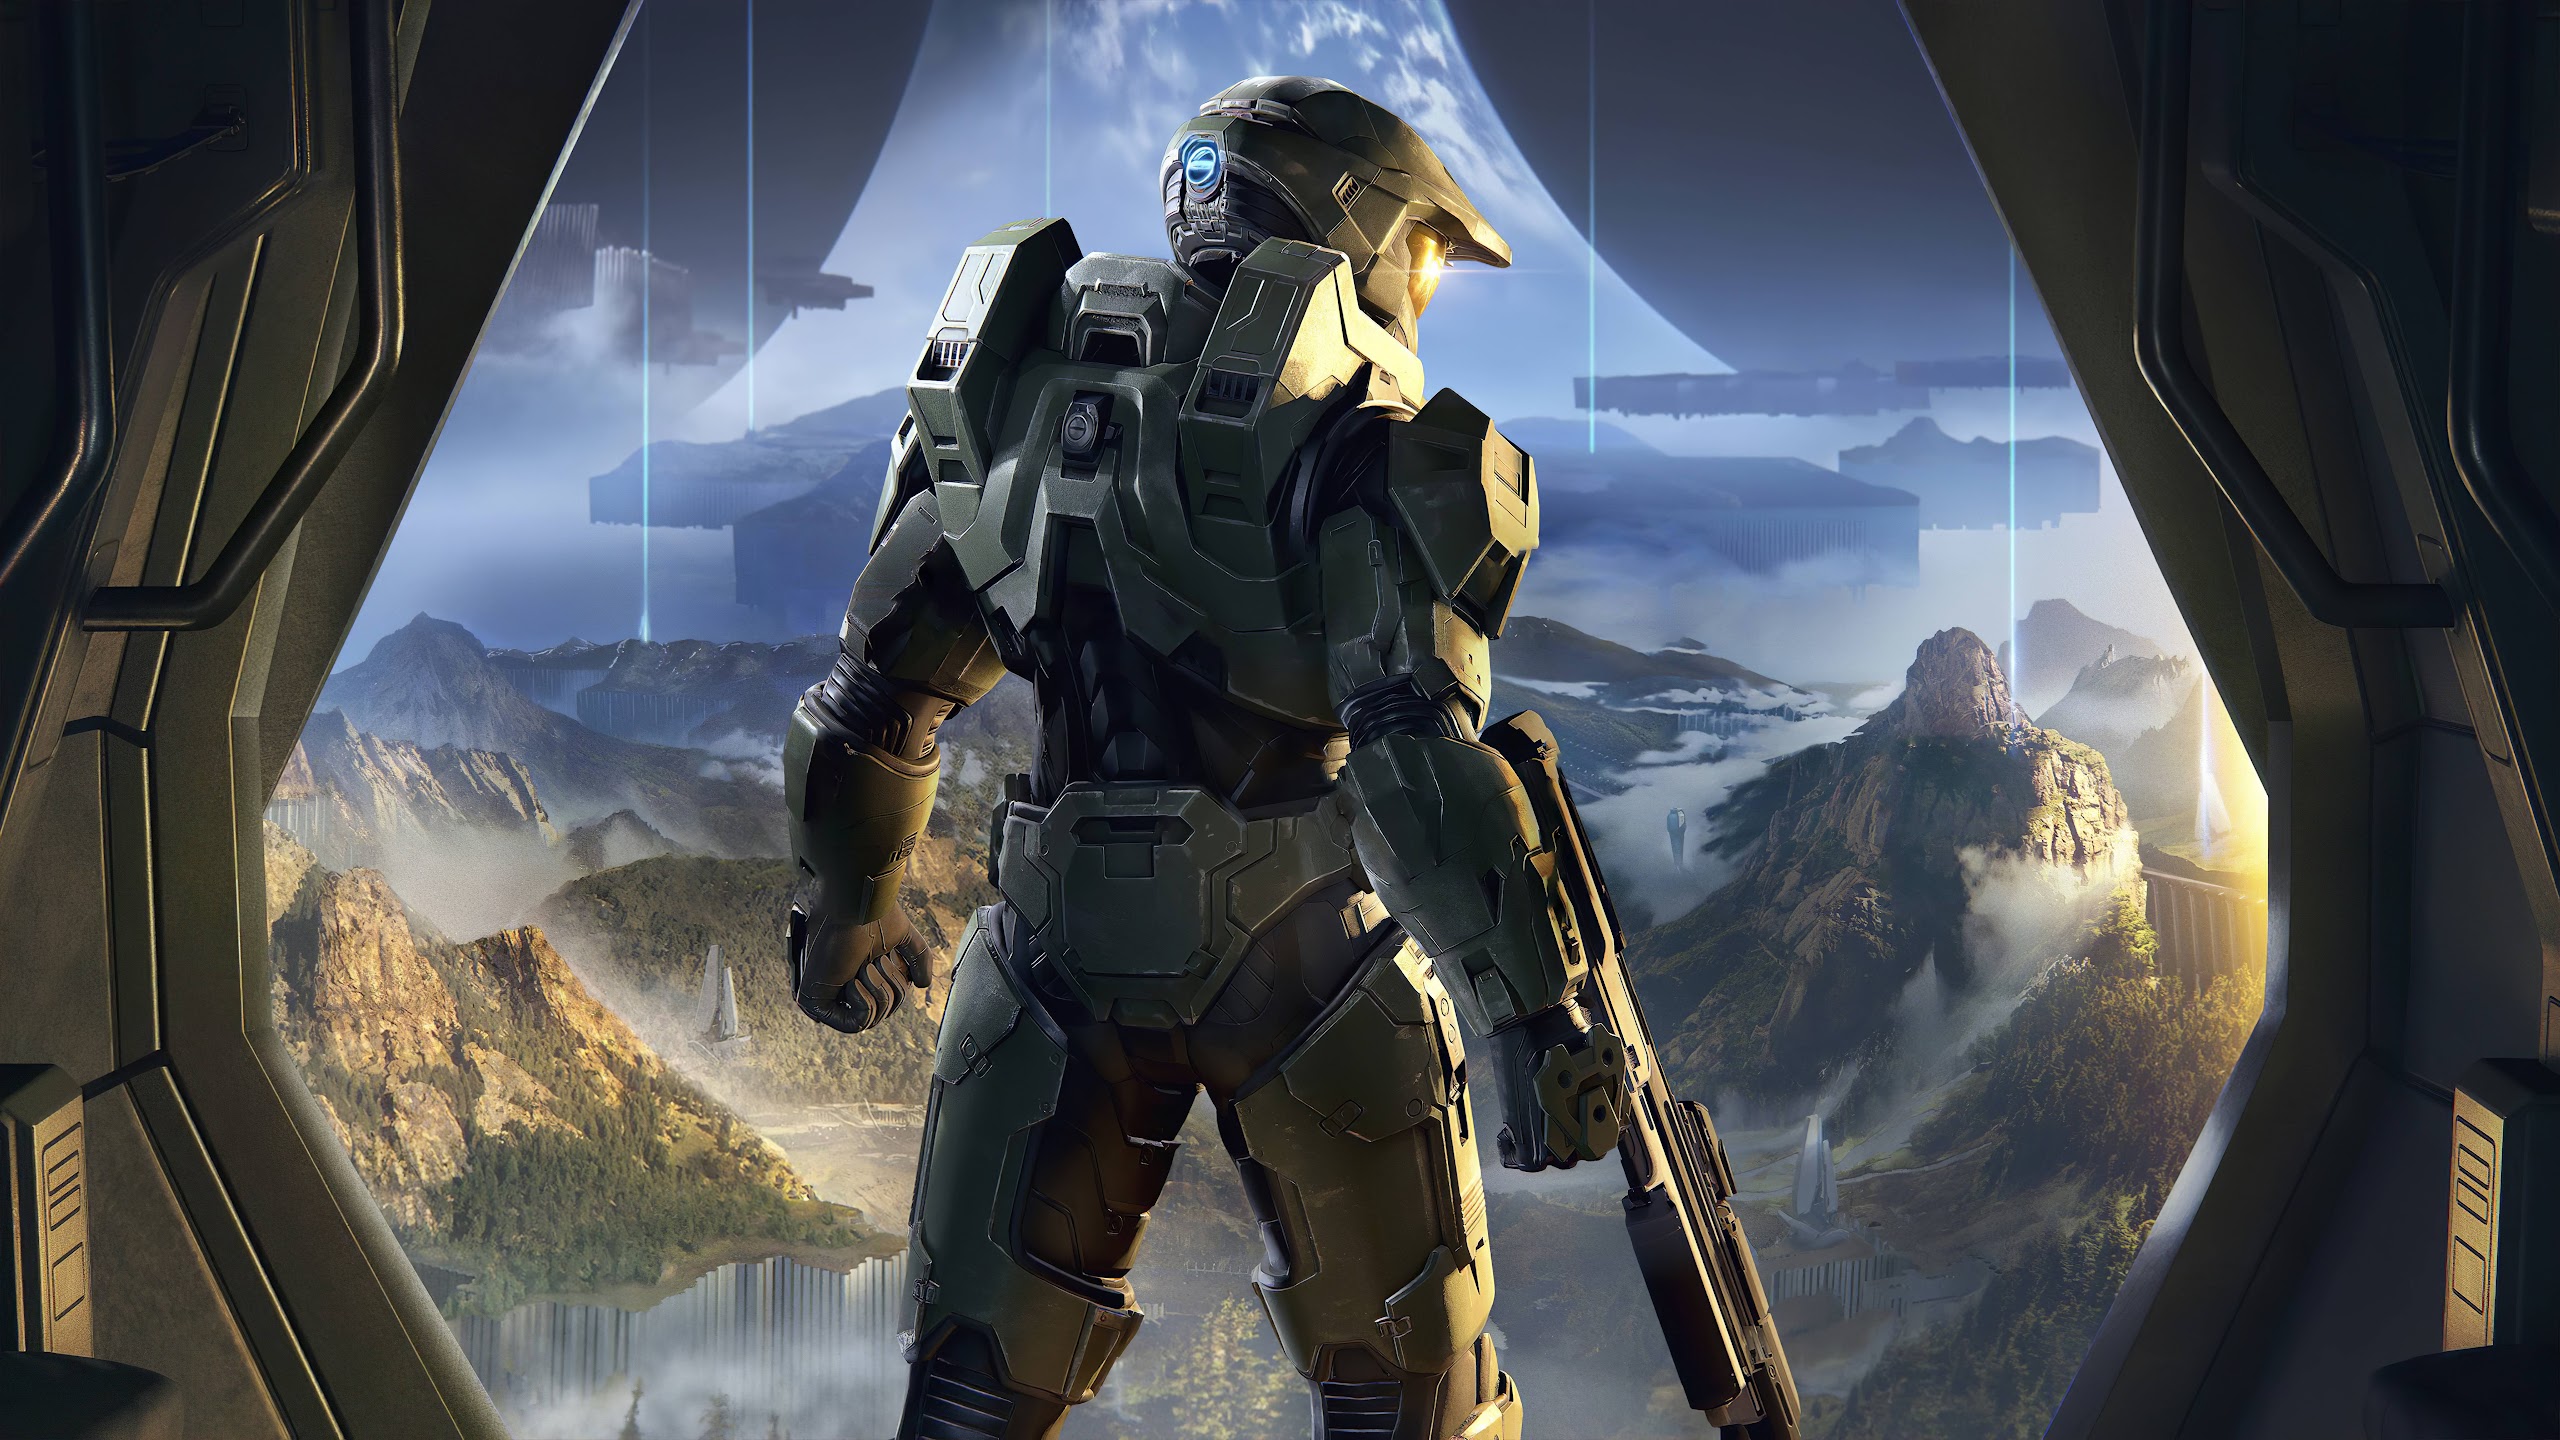 La estación de noticias de Seattle reproduce el tema de Halo para dar inicio al año nuevo, GamersRD